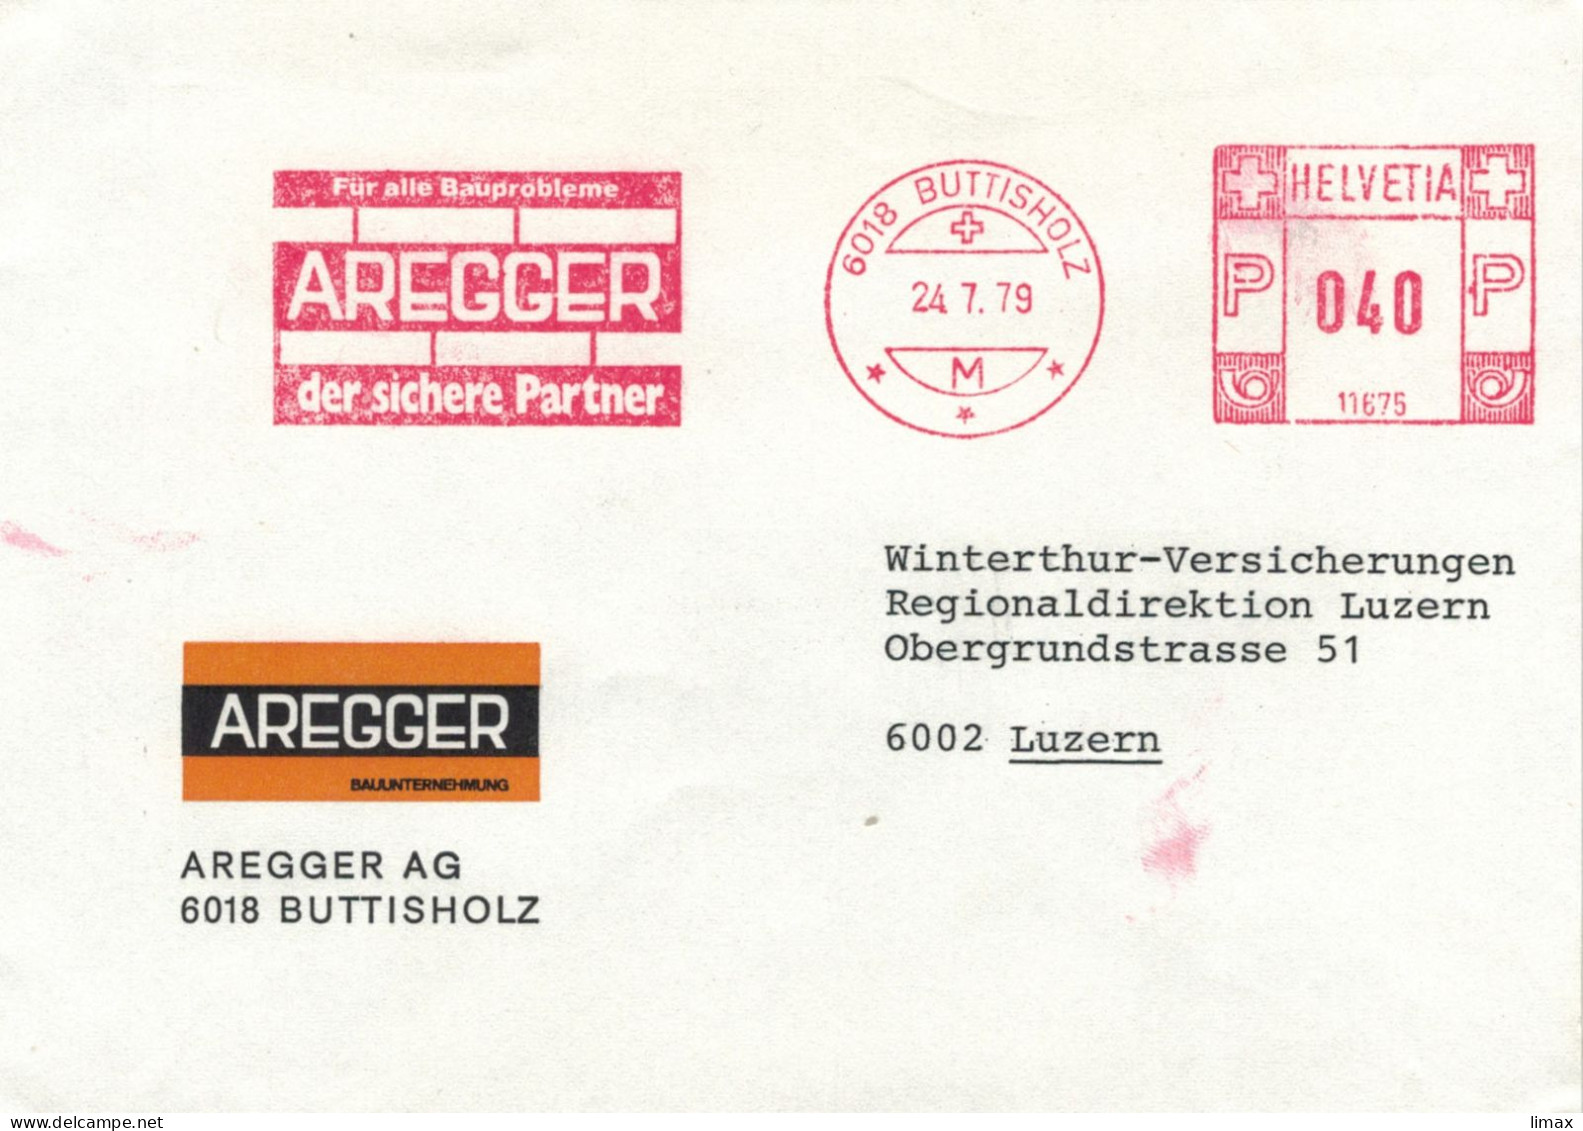 Aregger 6018 Buttisholz 1979 - Der Sichere Partner Für Alle Bauprobleme Stempel 11675 > Luzern - Frankiermaschinen (FraMA)